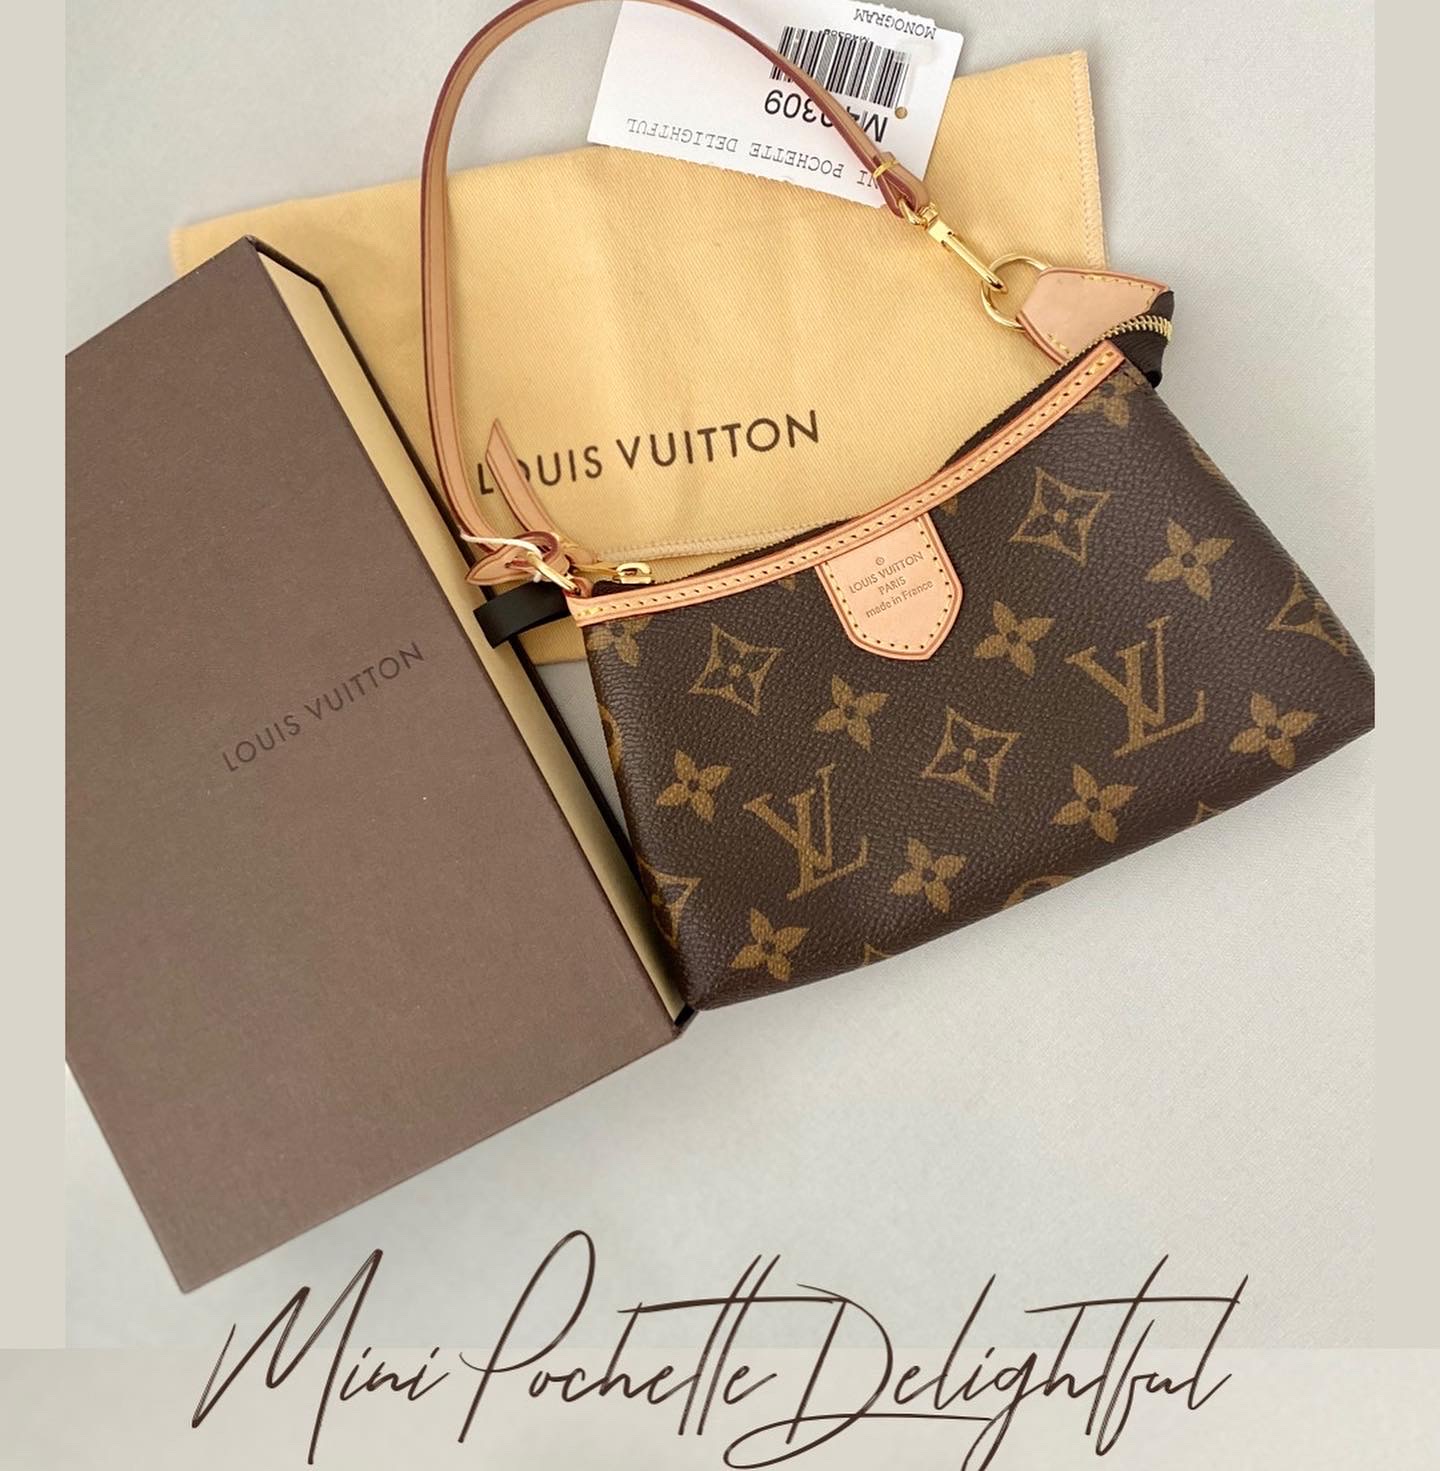 Louis Vuitton mini delightful pochette 495.00